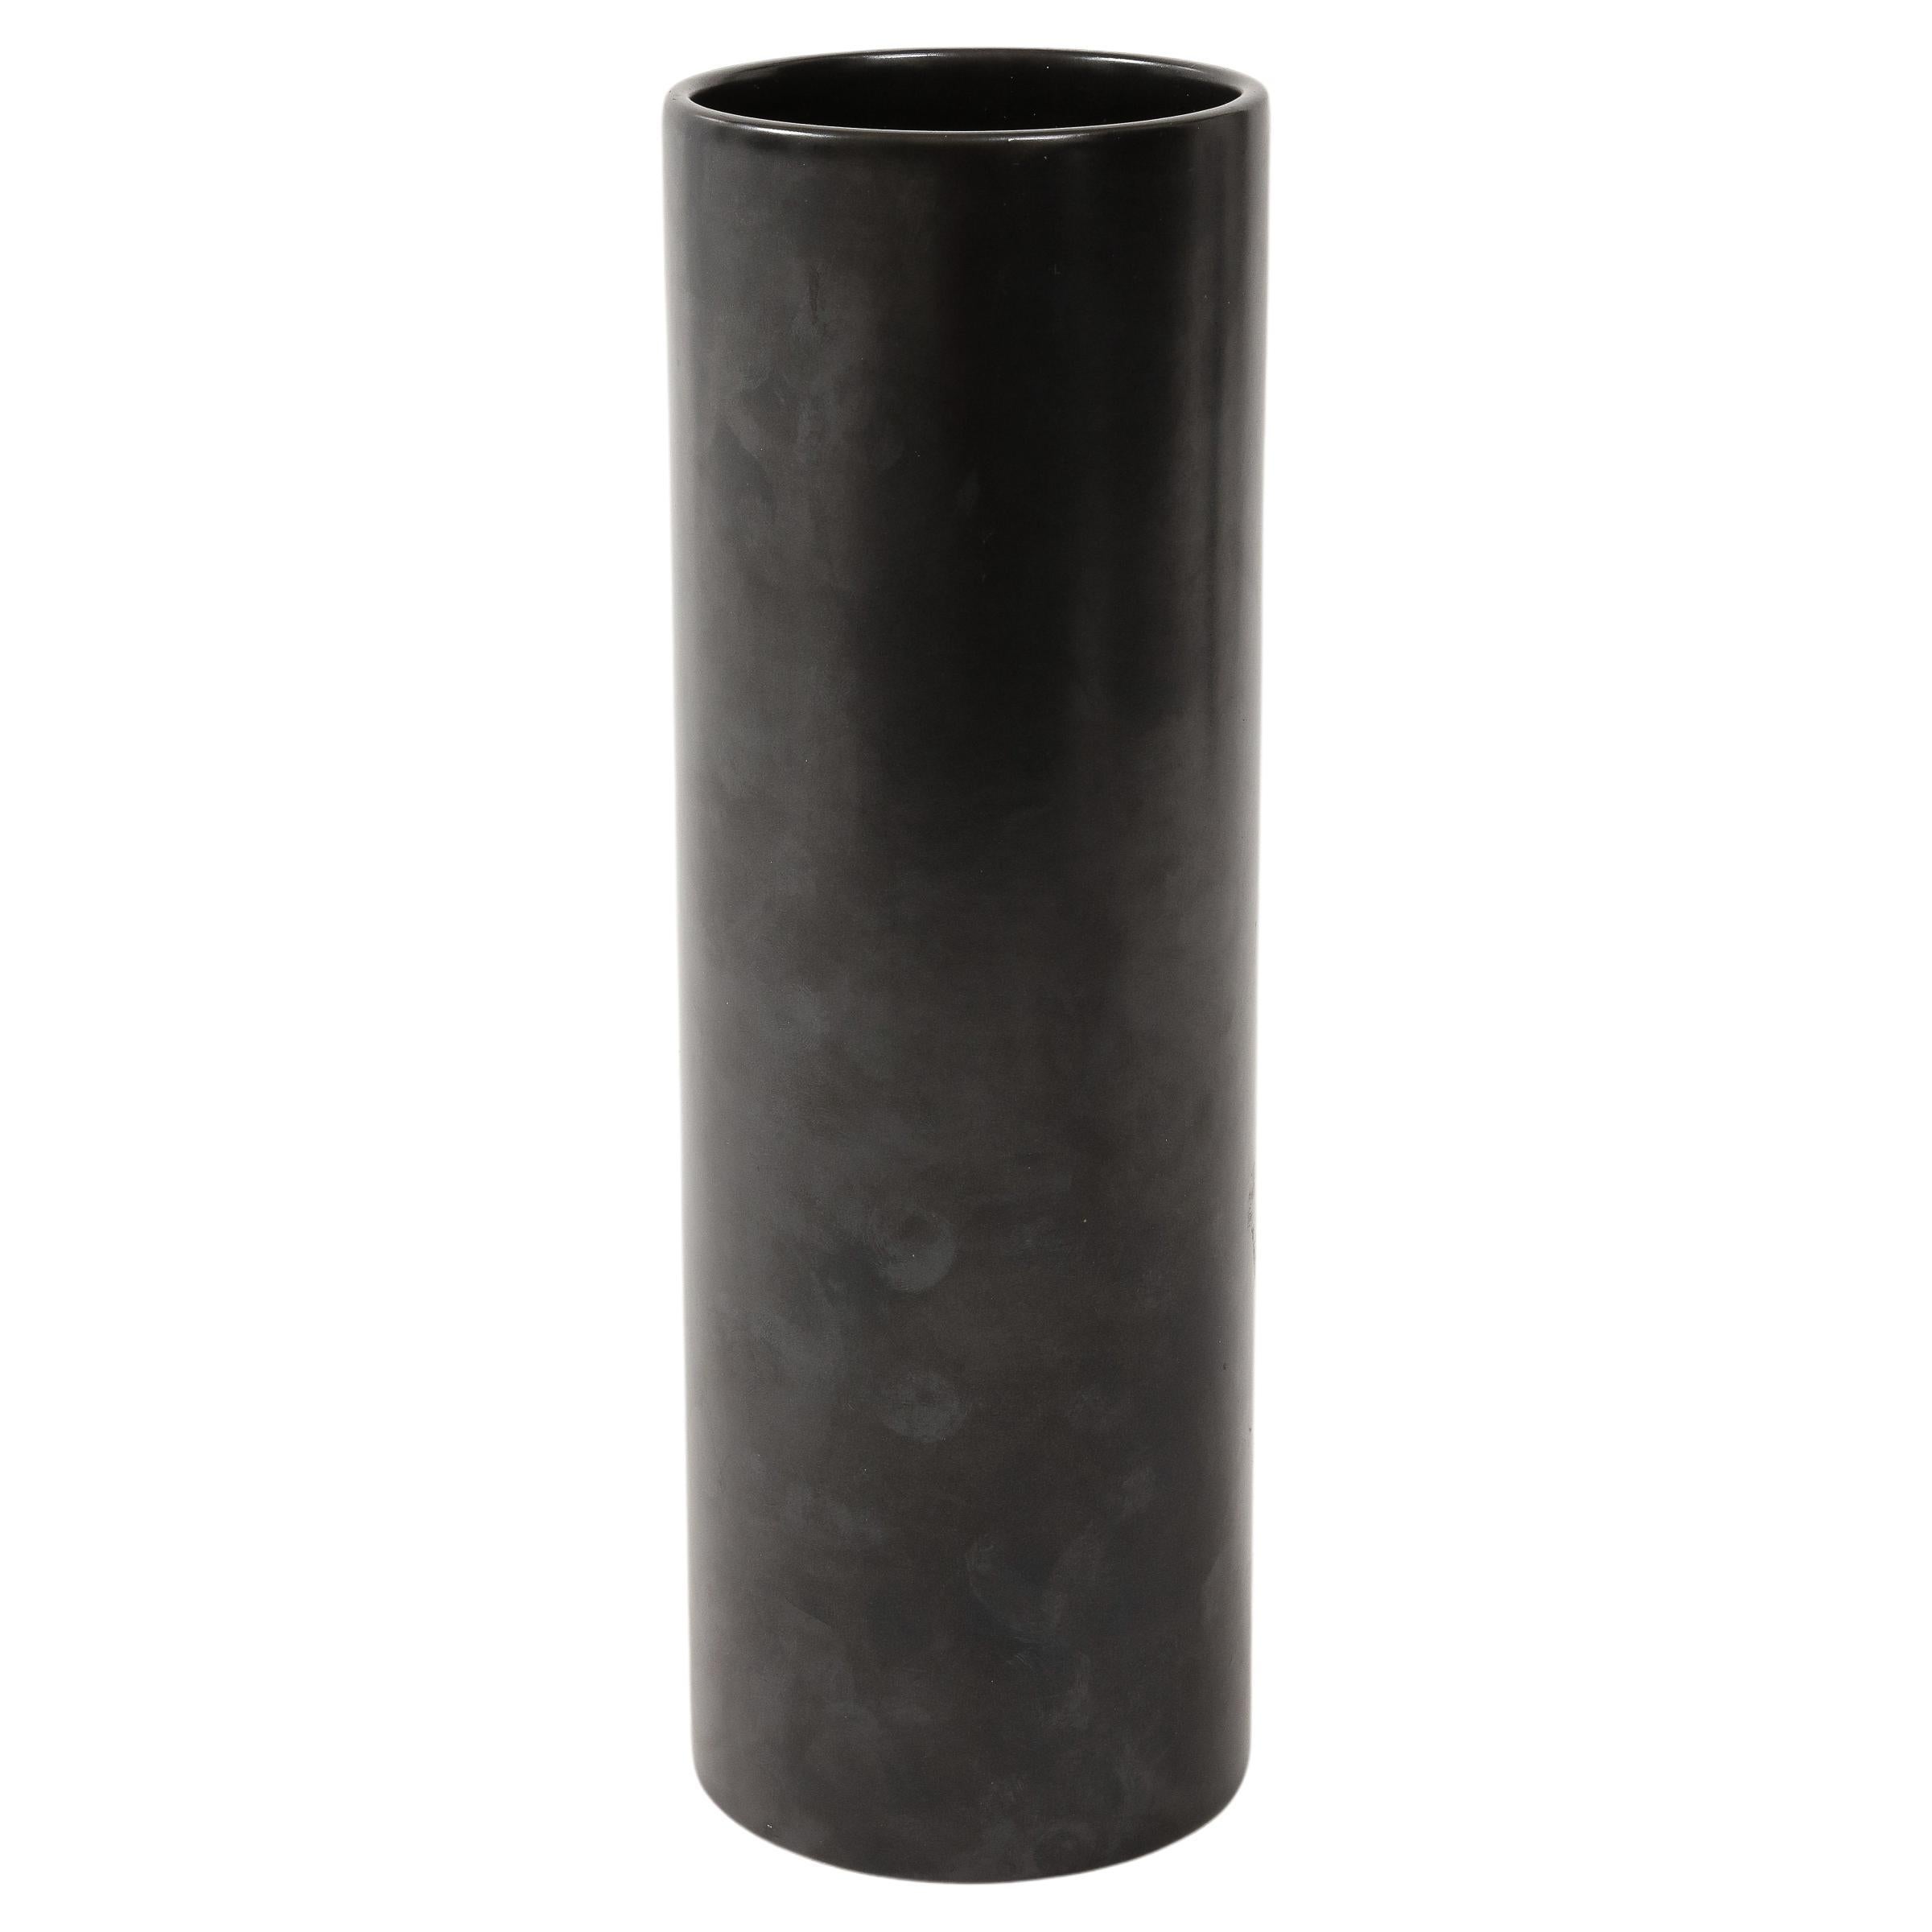 Large Georges Jouve Style Black Matte Cylinder Vase, France, c. 1950's